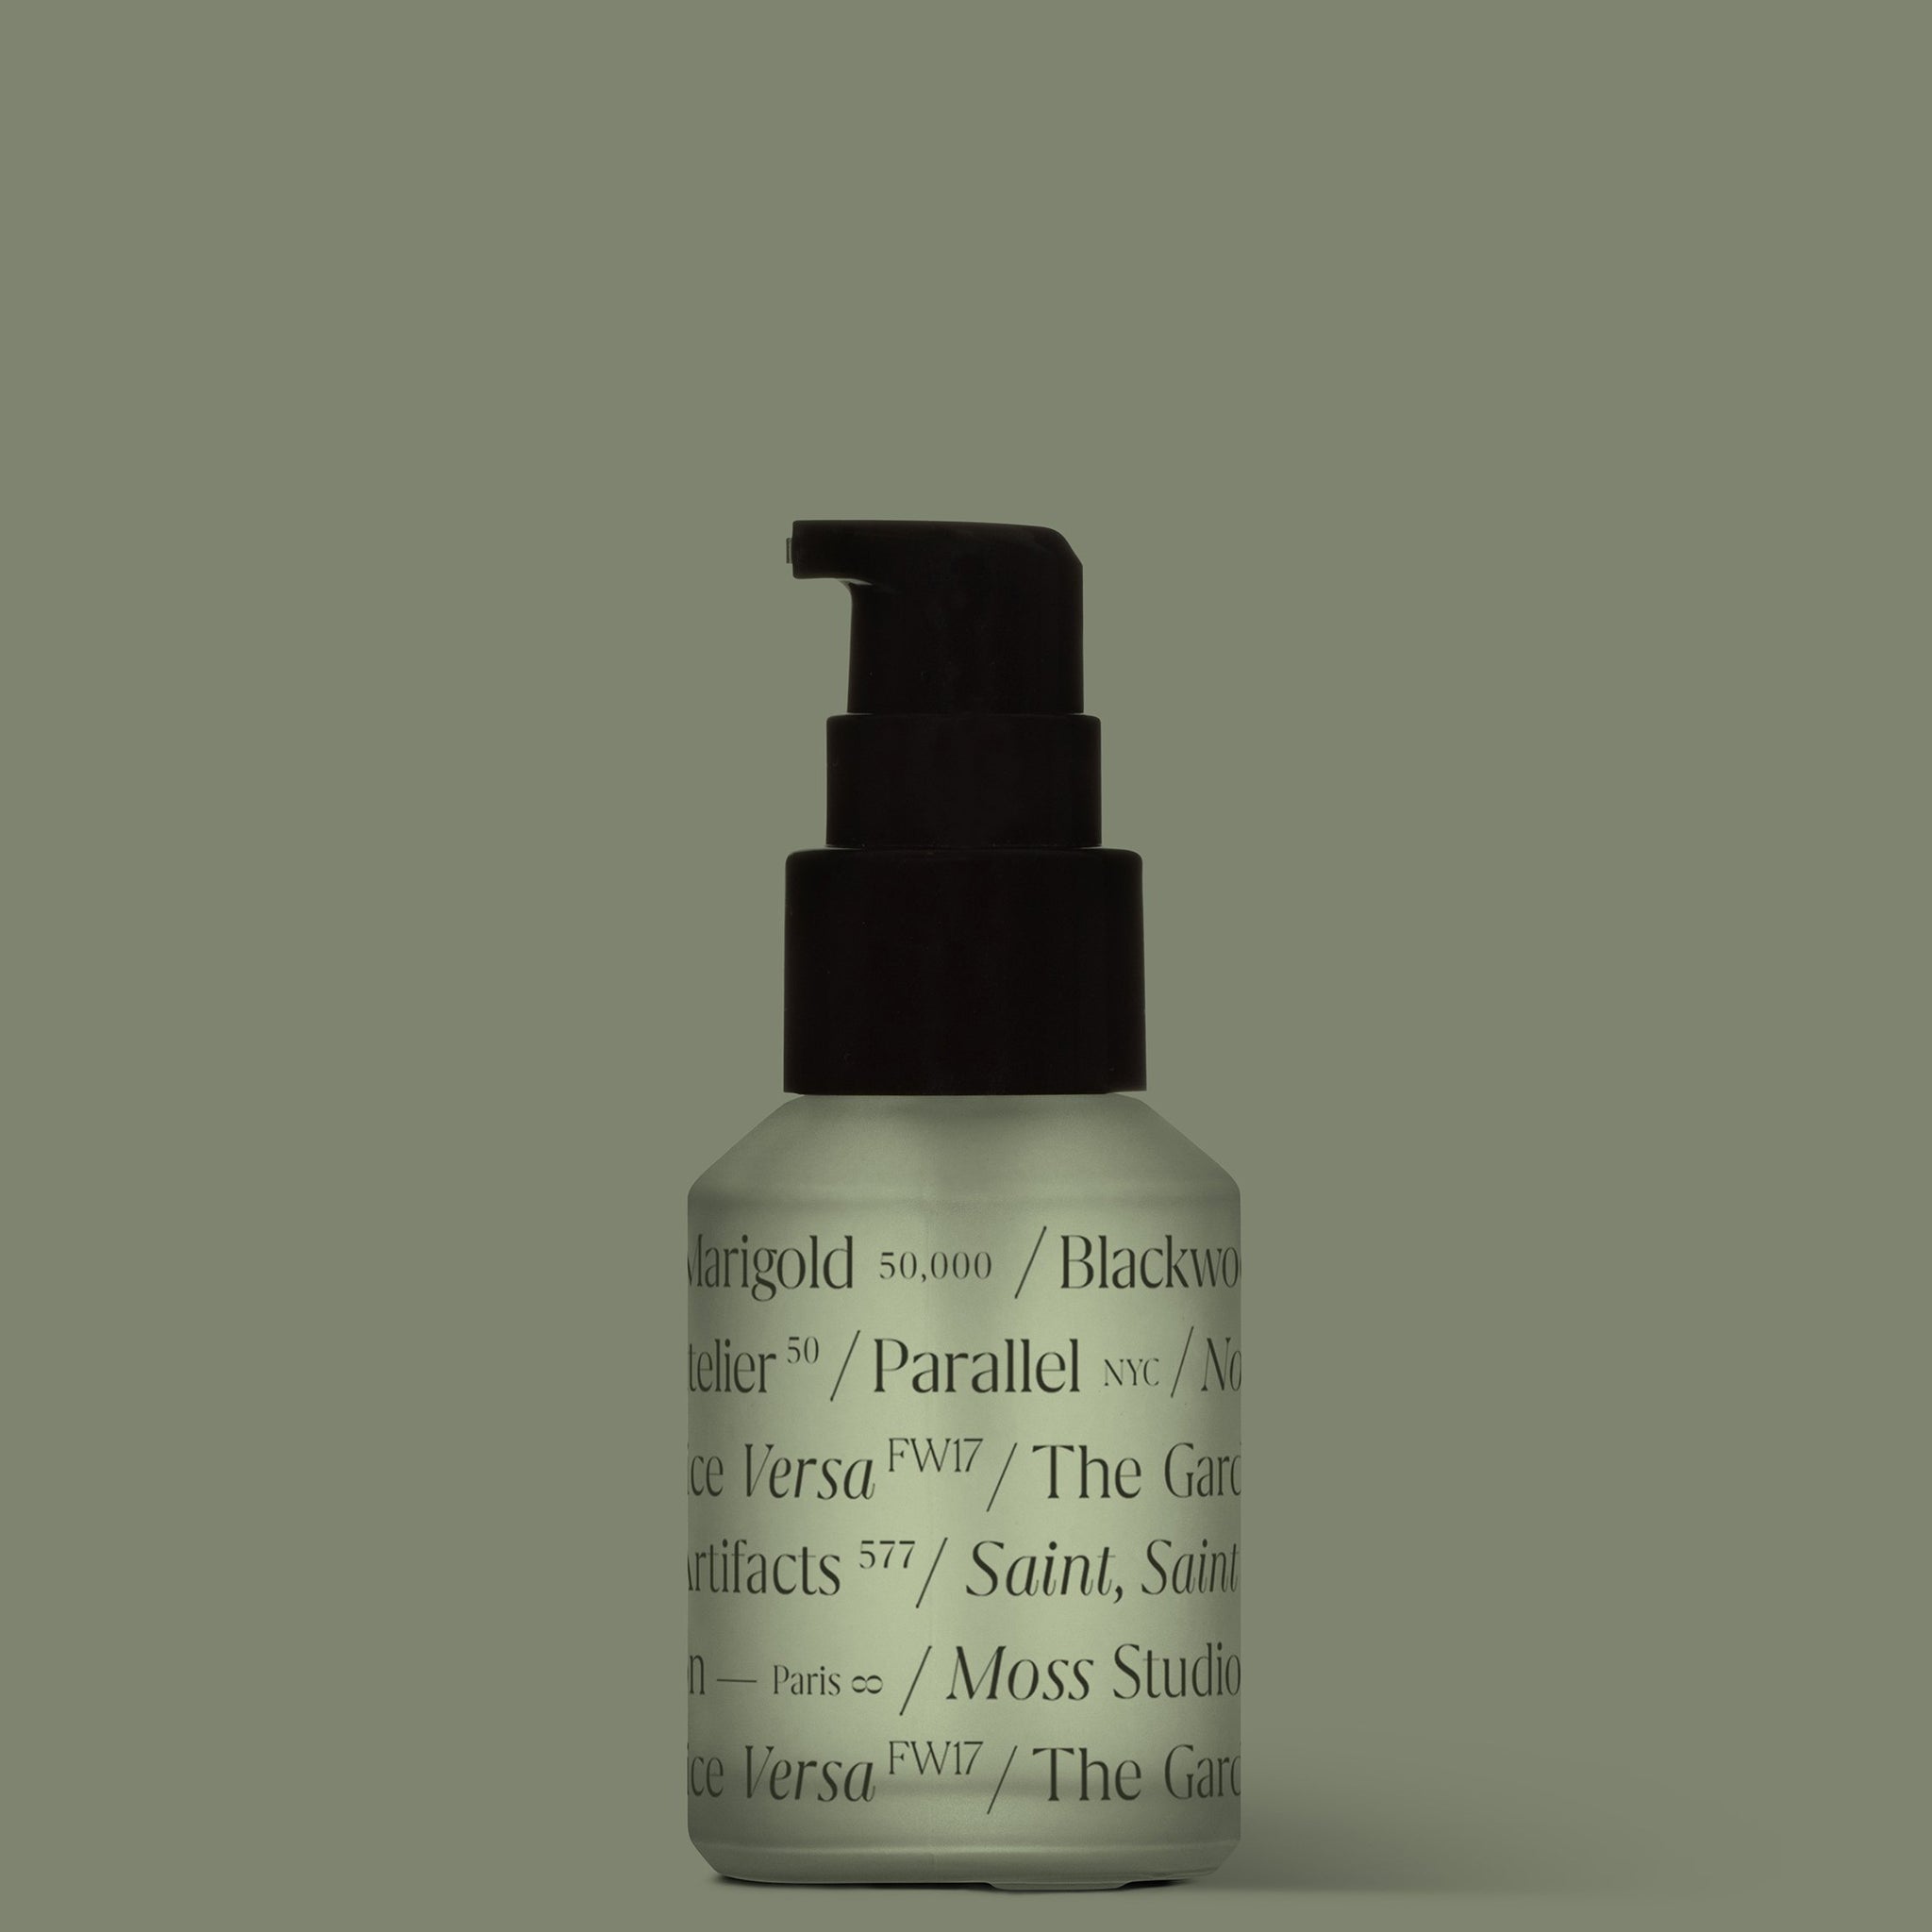 Frosted Glass Pump Bottle Mockup - Copal Studio Packaging Mockups For Designers